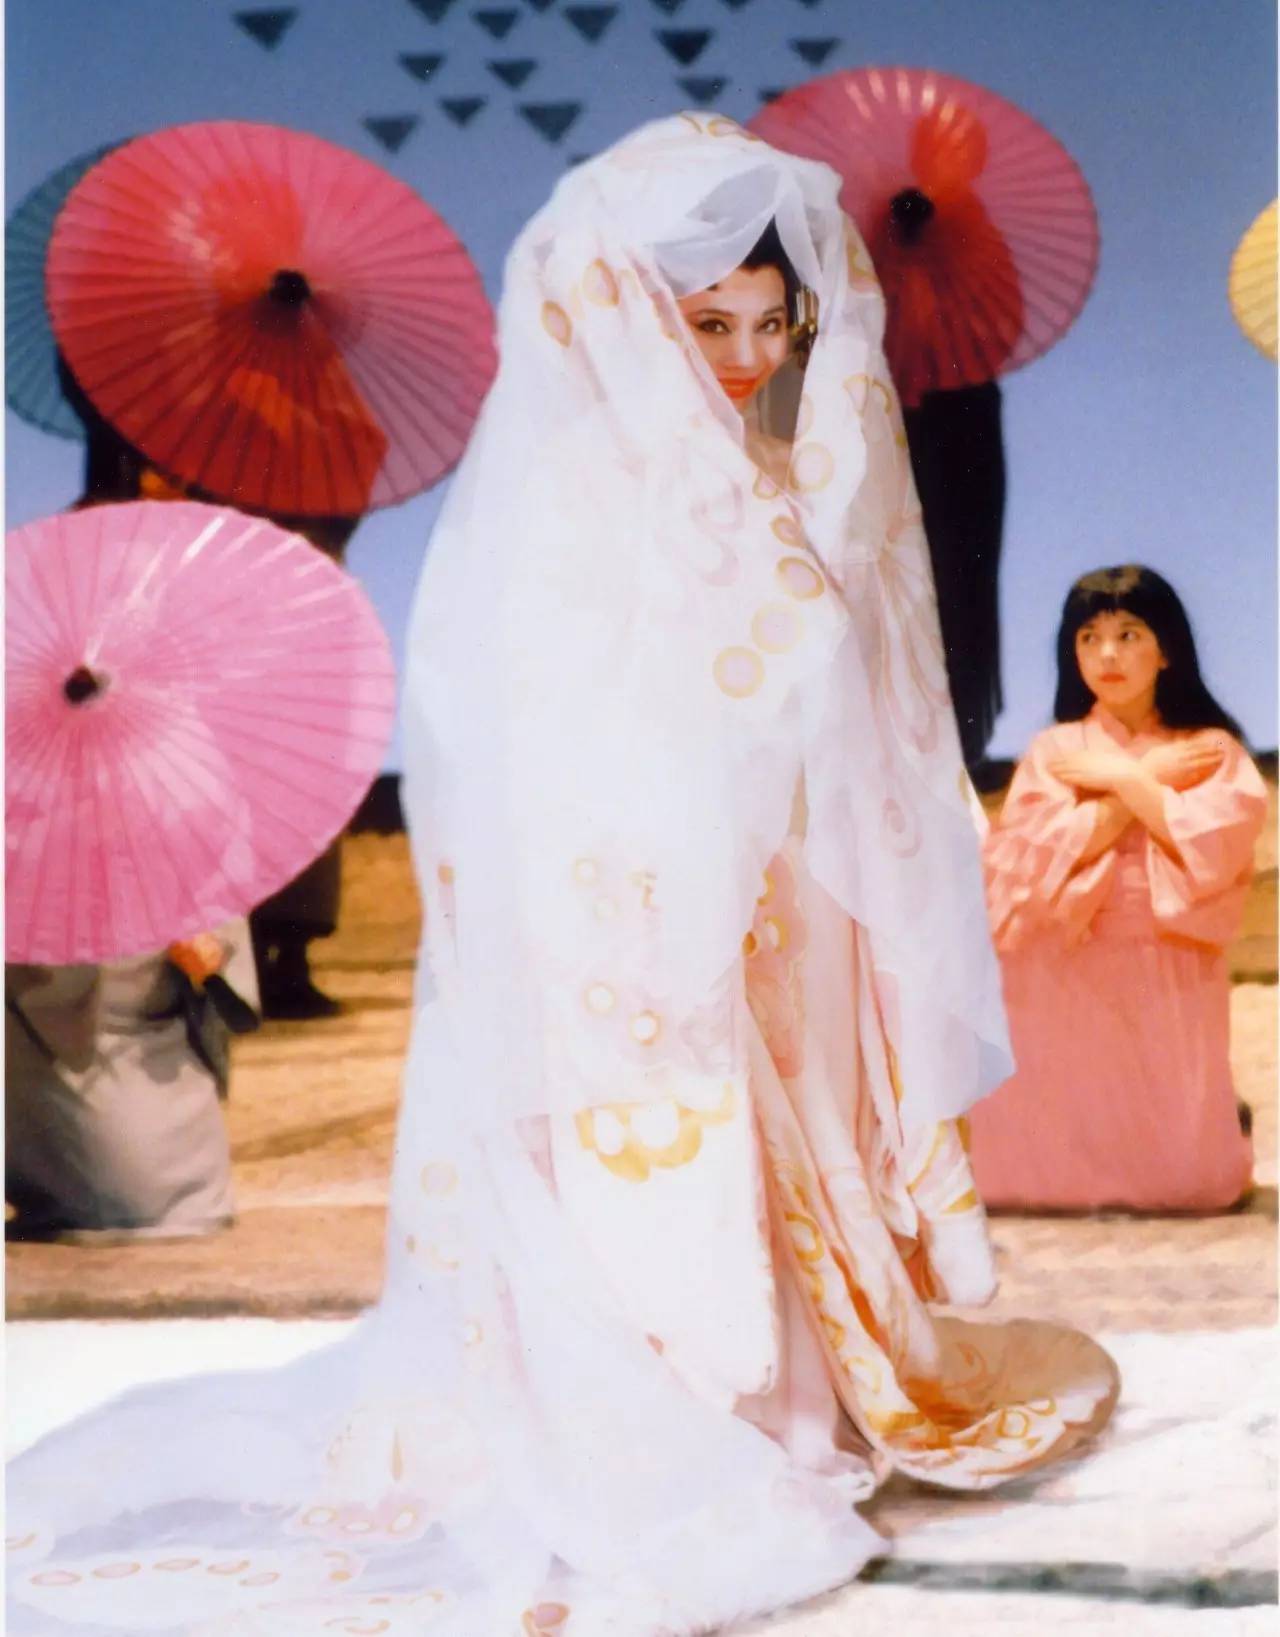 她是多明戈在《图兰朵》中钦点的「中国公主」